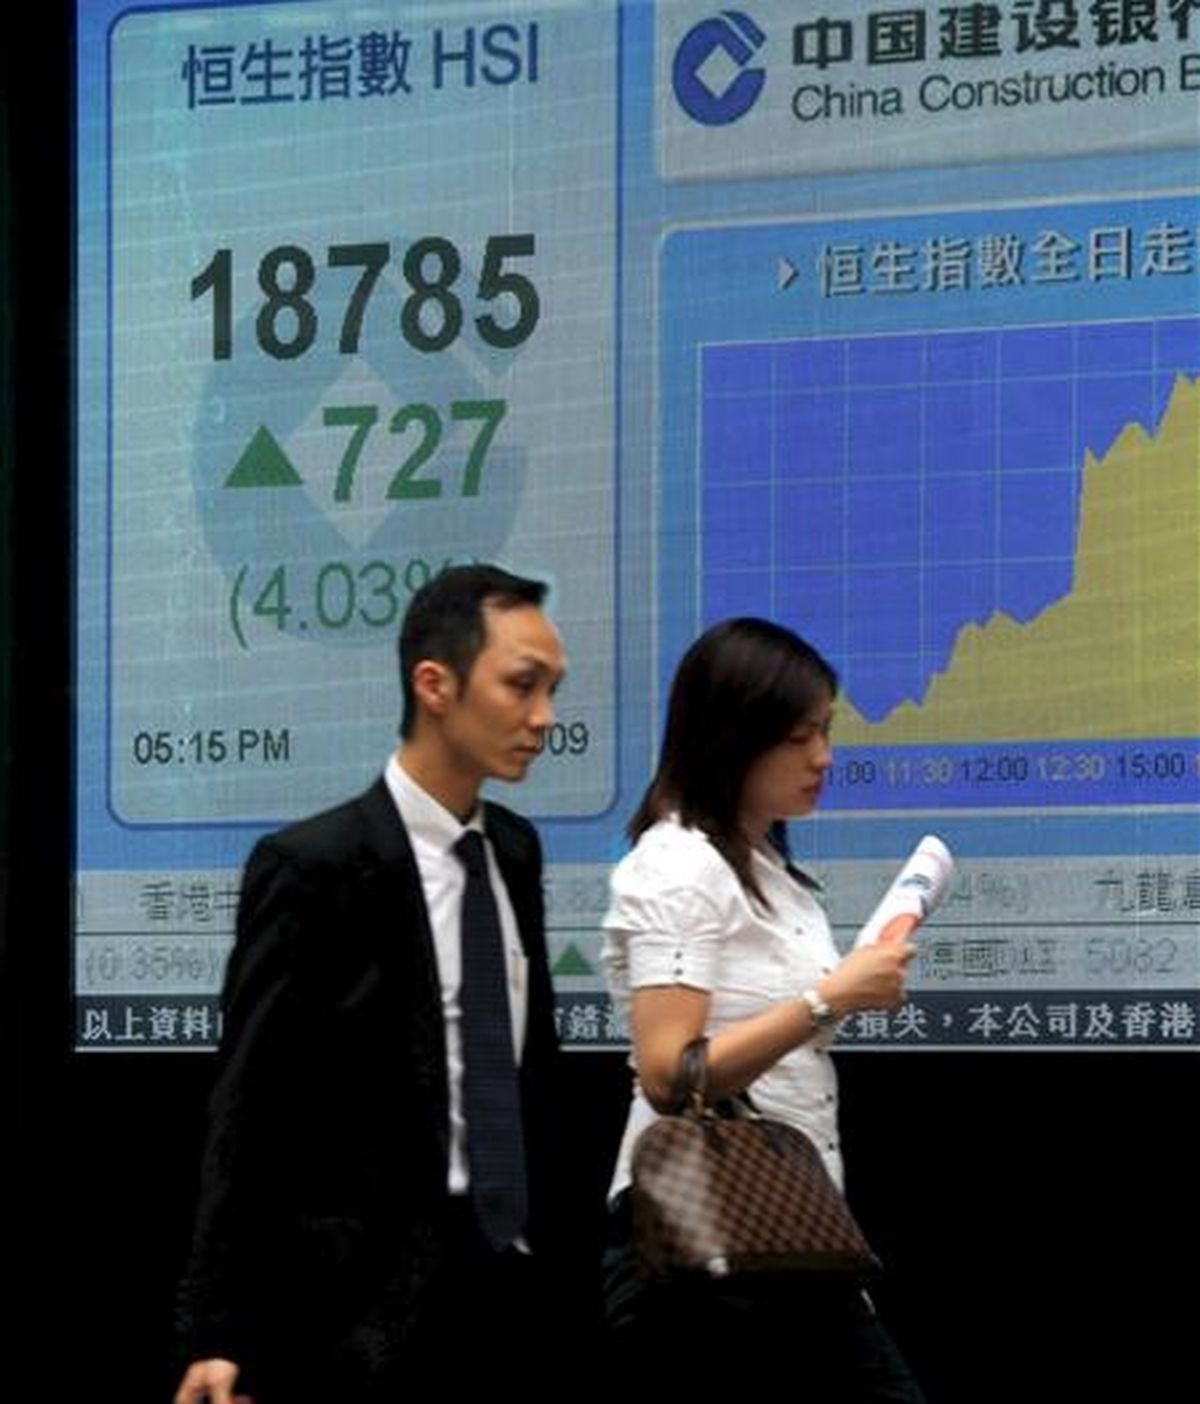 El índice Hang Seng de la Bolsa de Hong Kong retrocedió 356,52 puntos a media sesión, el equivalente al 1,97 por ciento, tras lo cual se situó en 17.728,08 enteros. EFE/Archivo